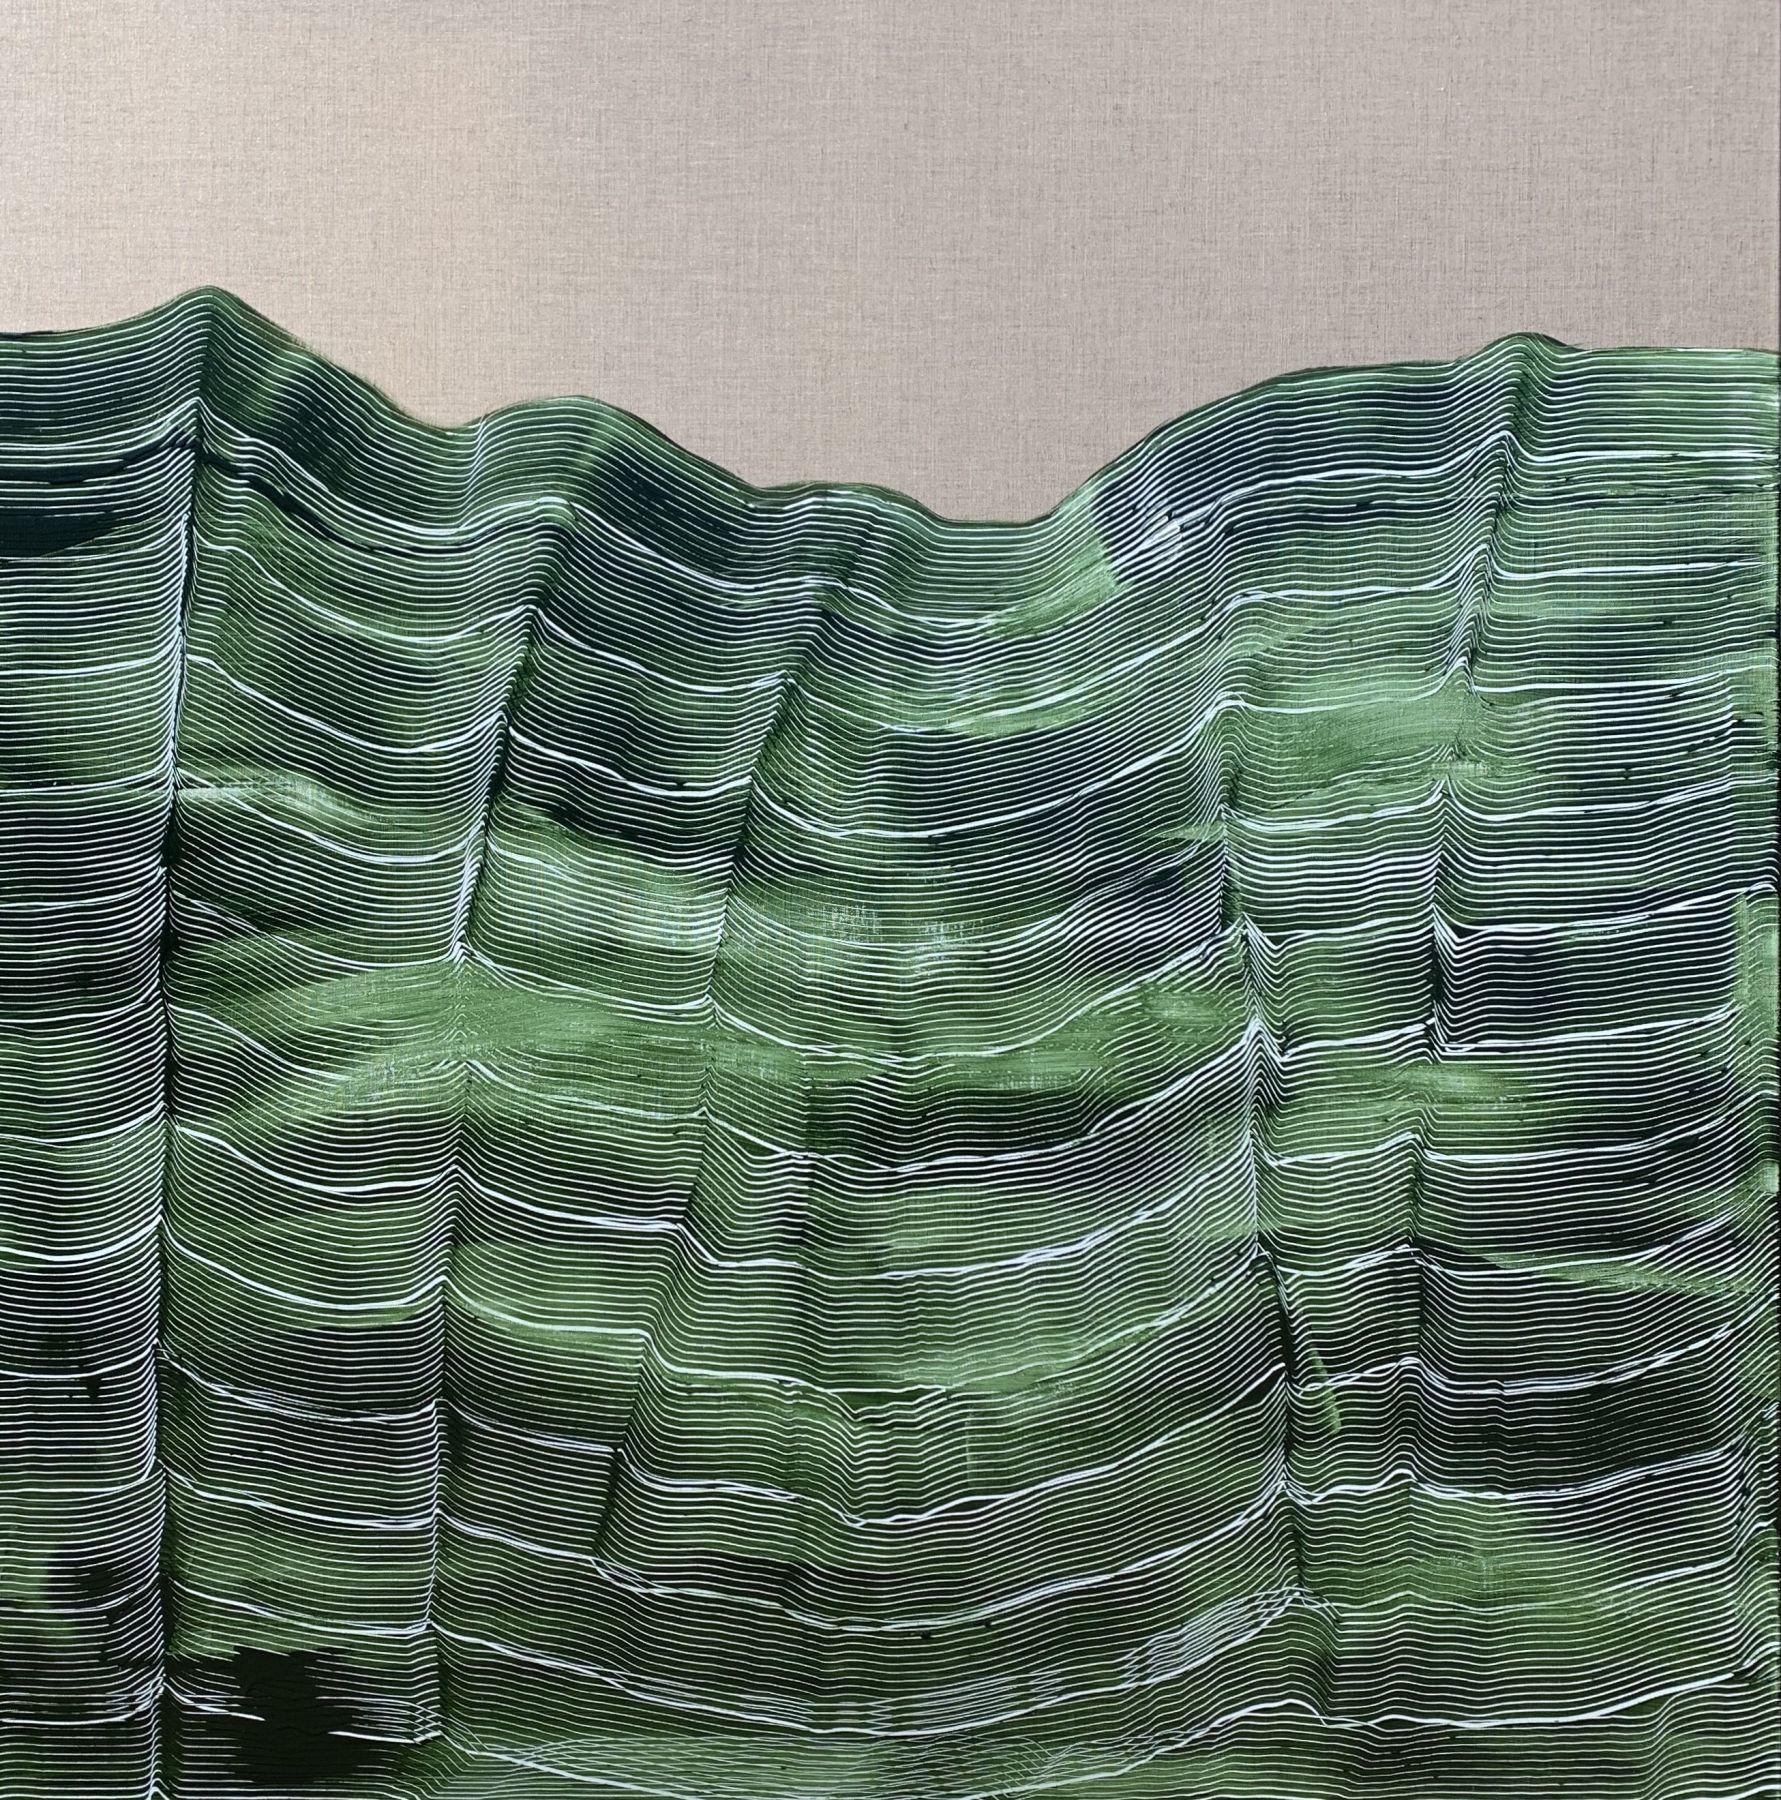 Maria José Benvenuto  Landscape Painting - 'Green strokes 2' by Maria Jose Benvenuto, unique contemporary painting on linen